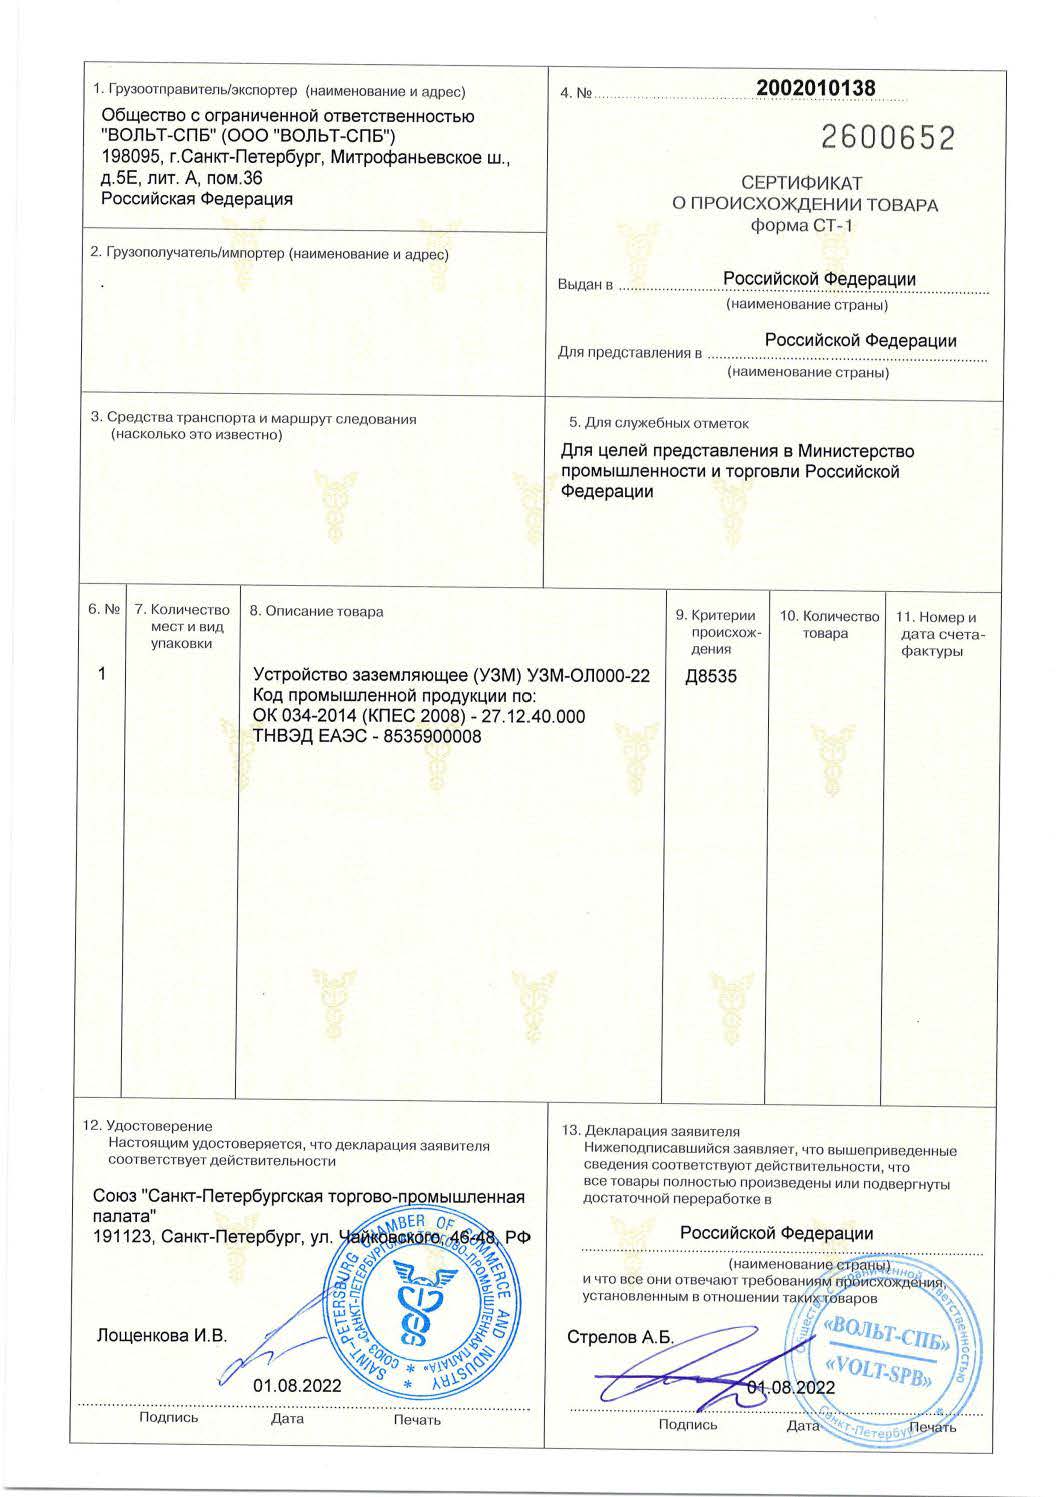 Сертификат о происхождении товара по форме СТ-1 (УЗМ)